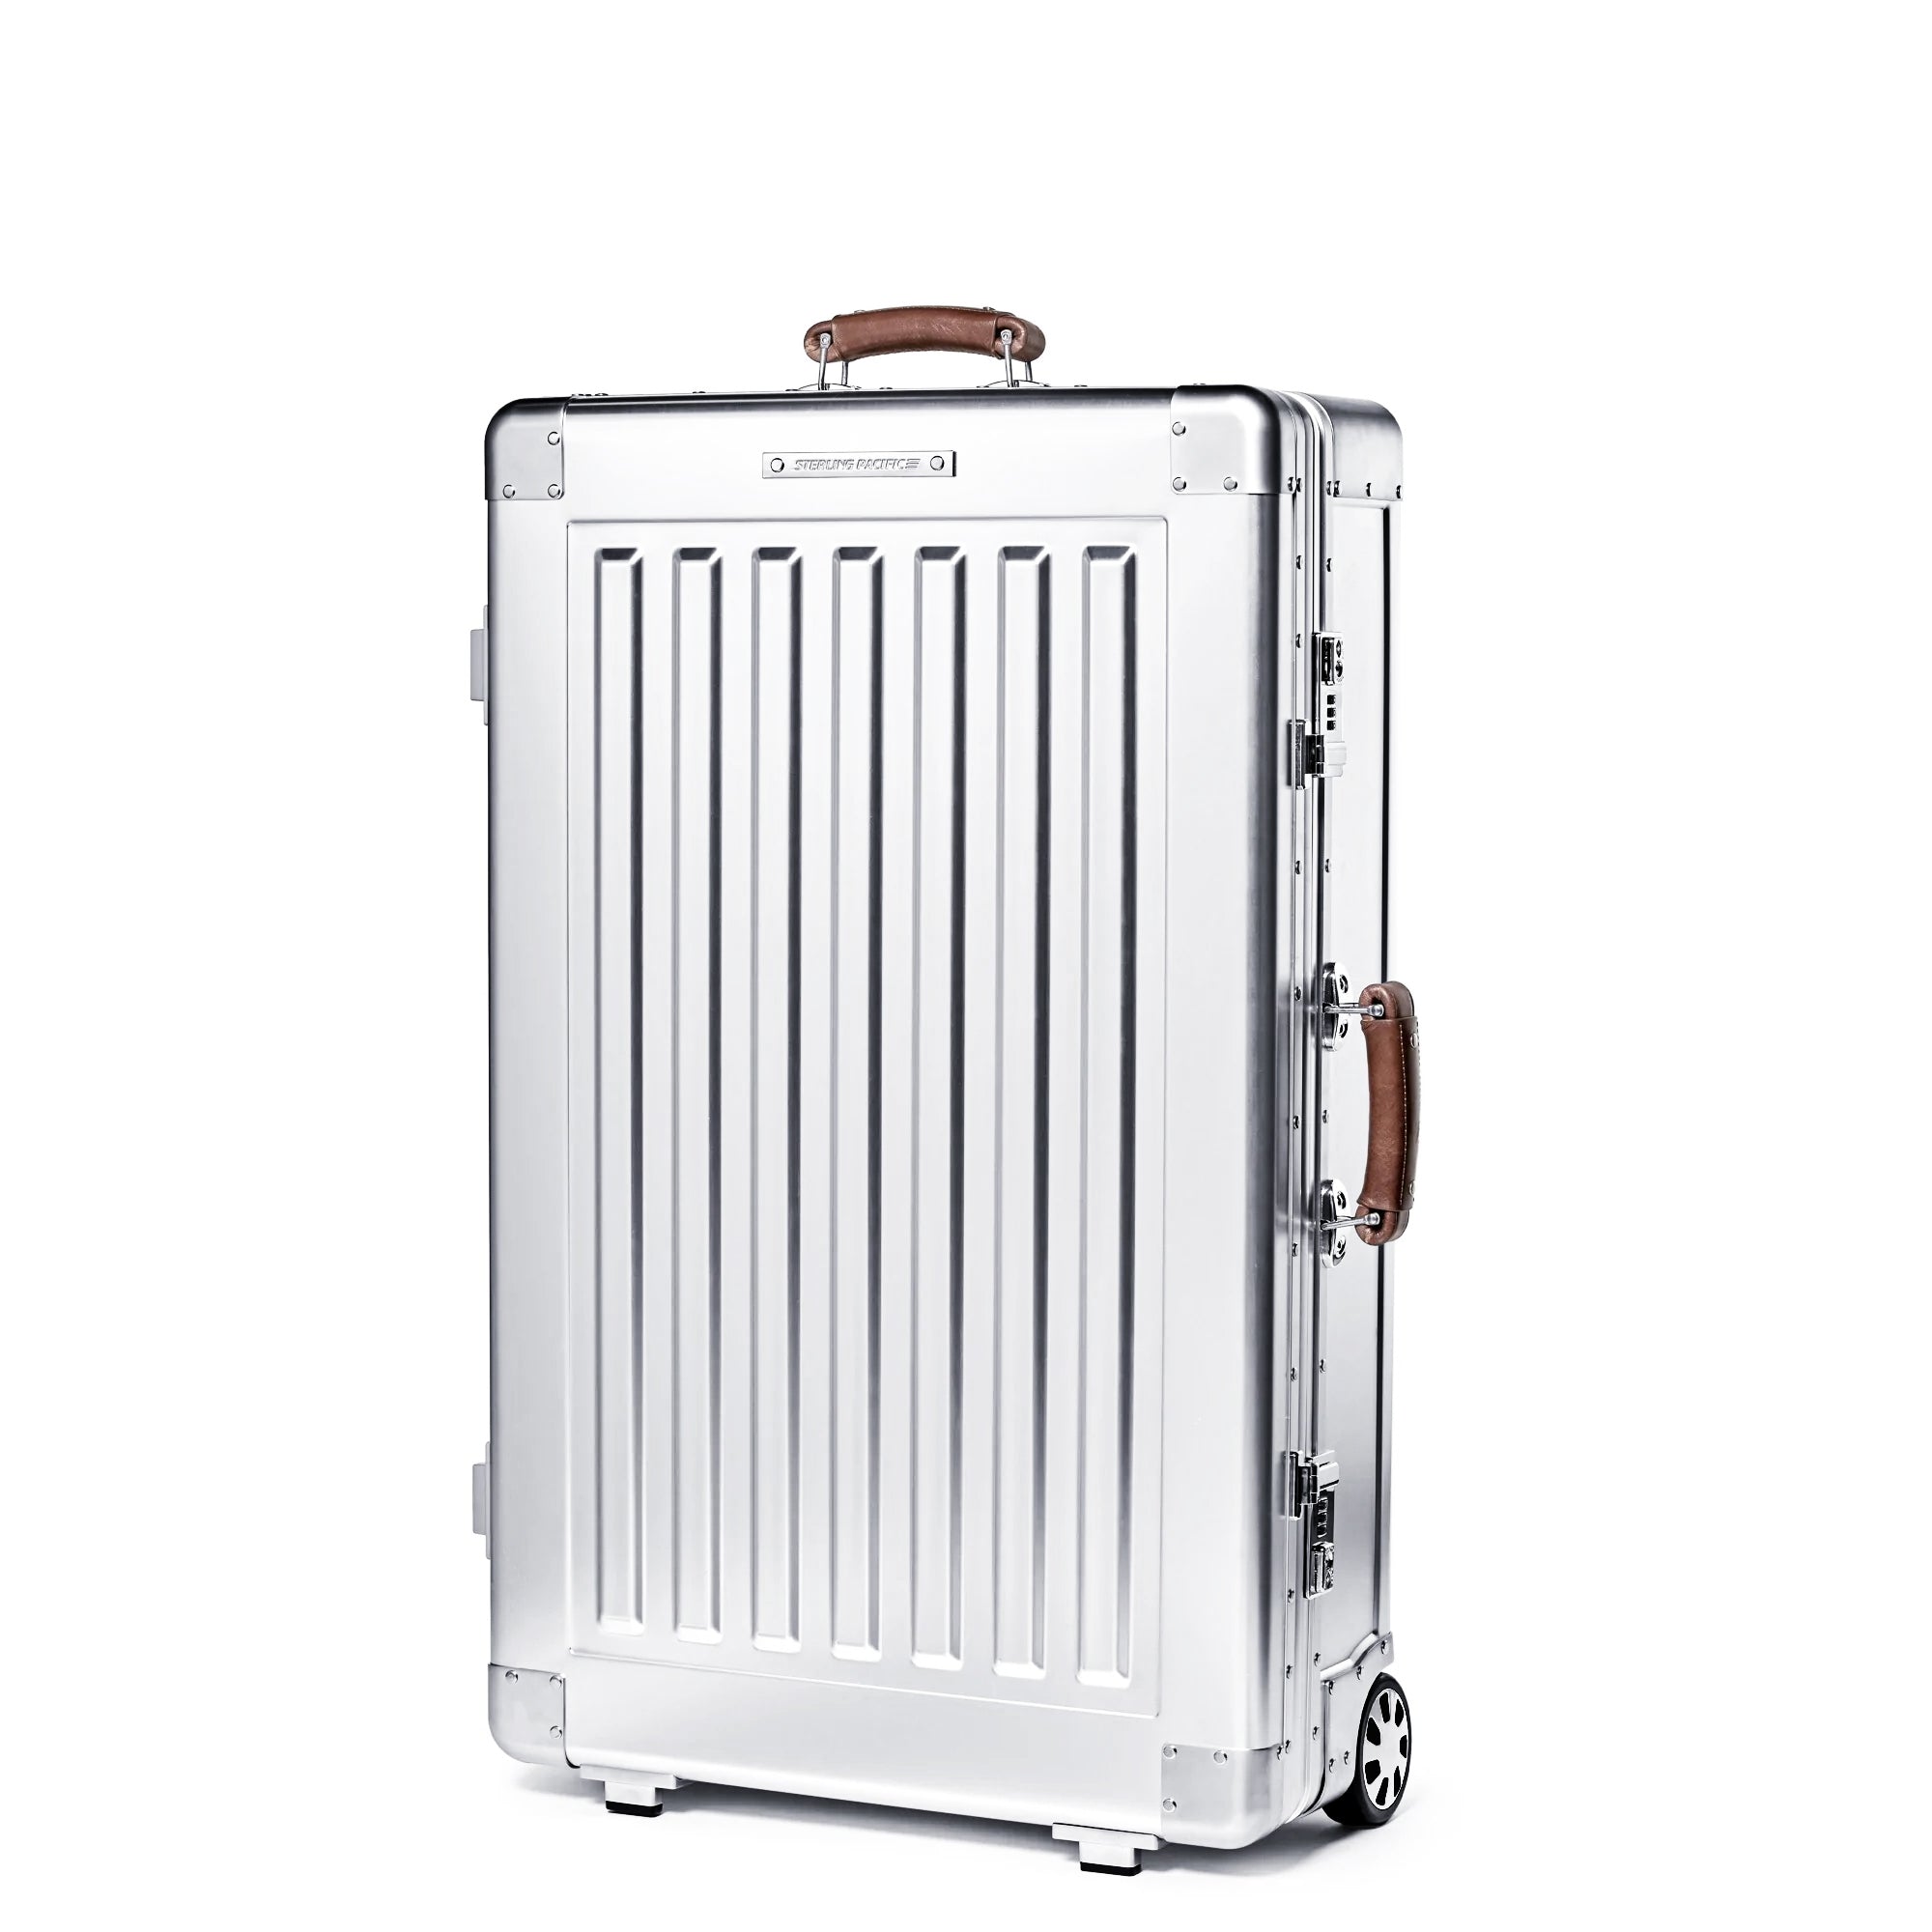 Original Trunk XL Large Aluminium Suitcase, Silver